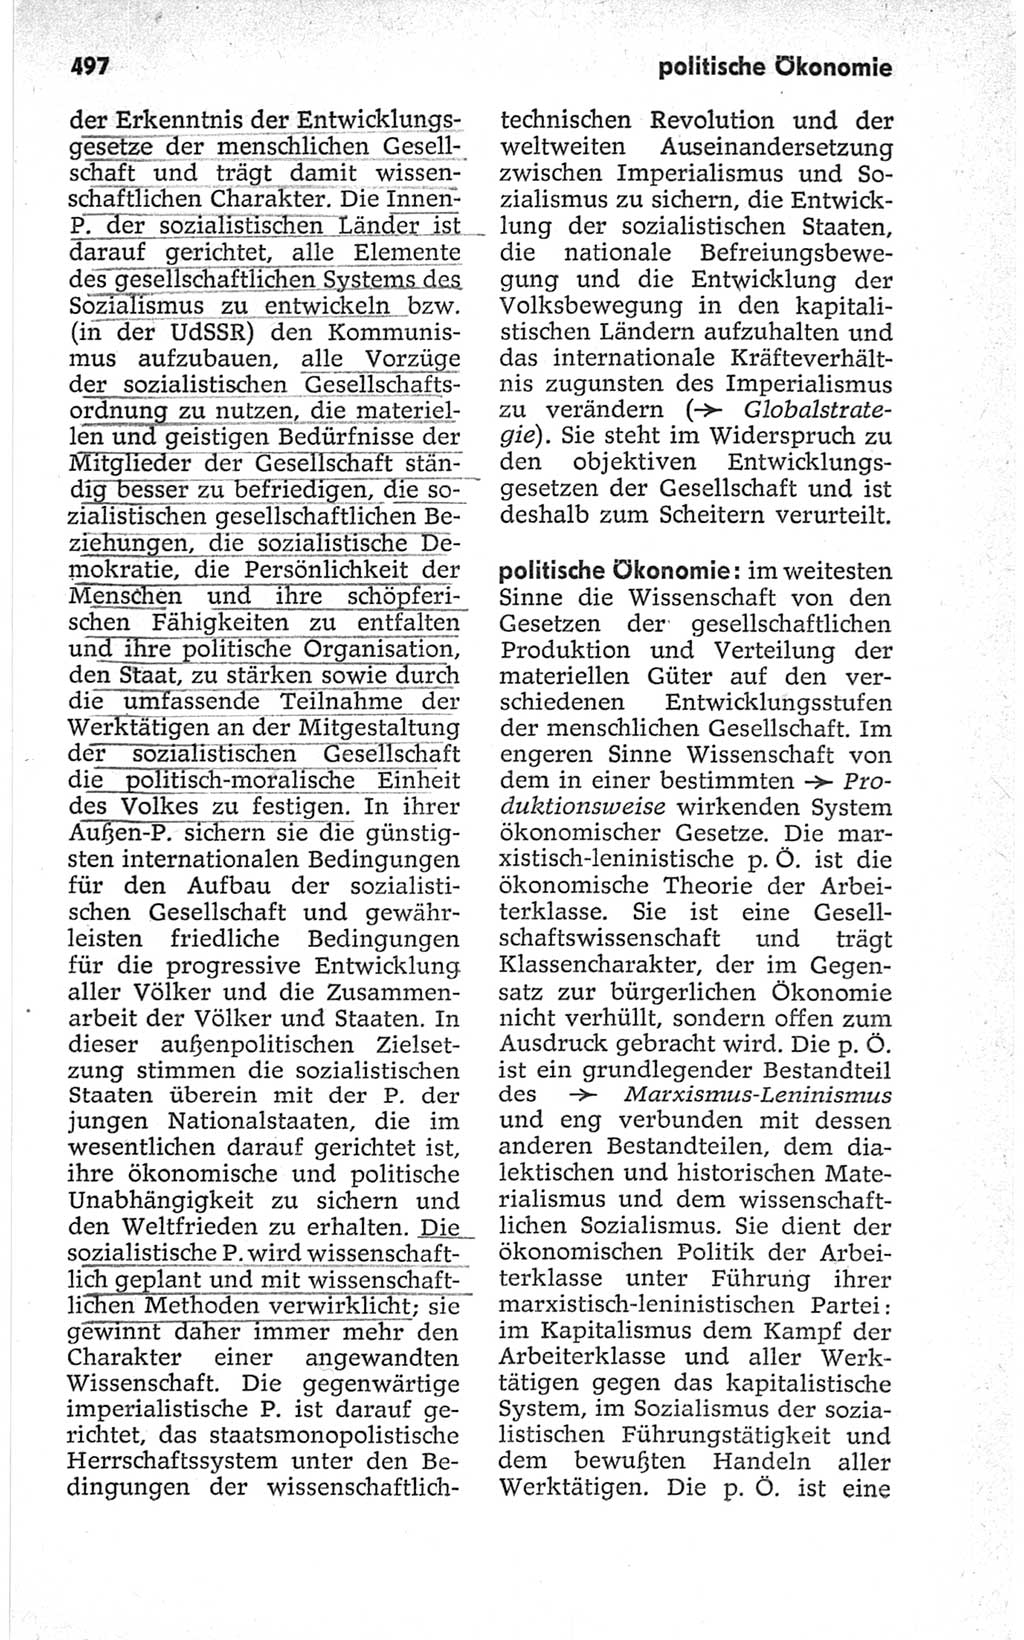 Kleines politisches Wörterbuch [Deutsche Demokratische Republik (DDR)] 1967, Seite 497 (Kl. pol. Wb. DDR 1967, S. 497)